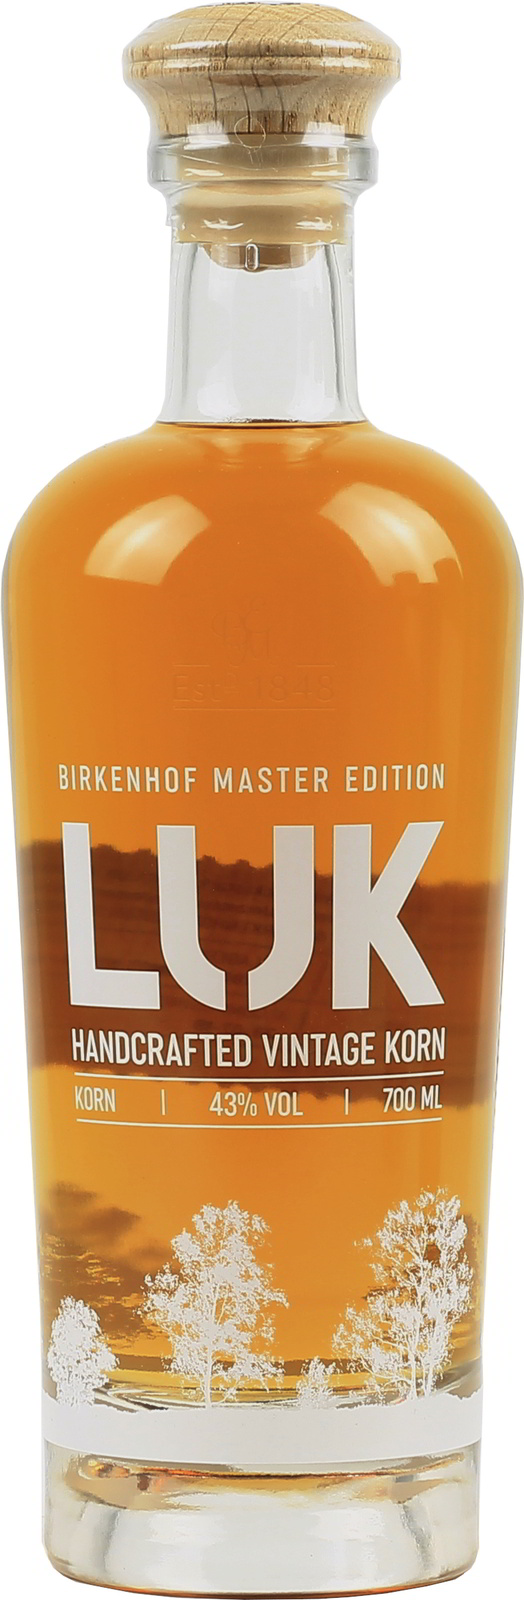 LUK Korn, Handcrafted Vintage Birkenhof exquisit